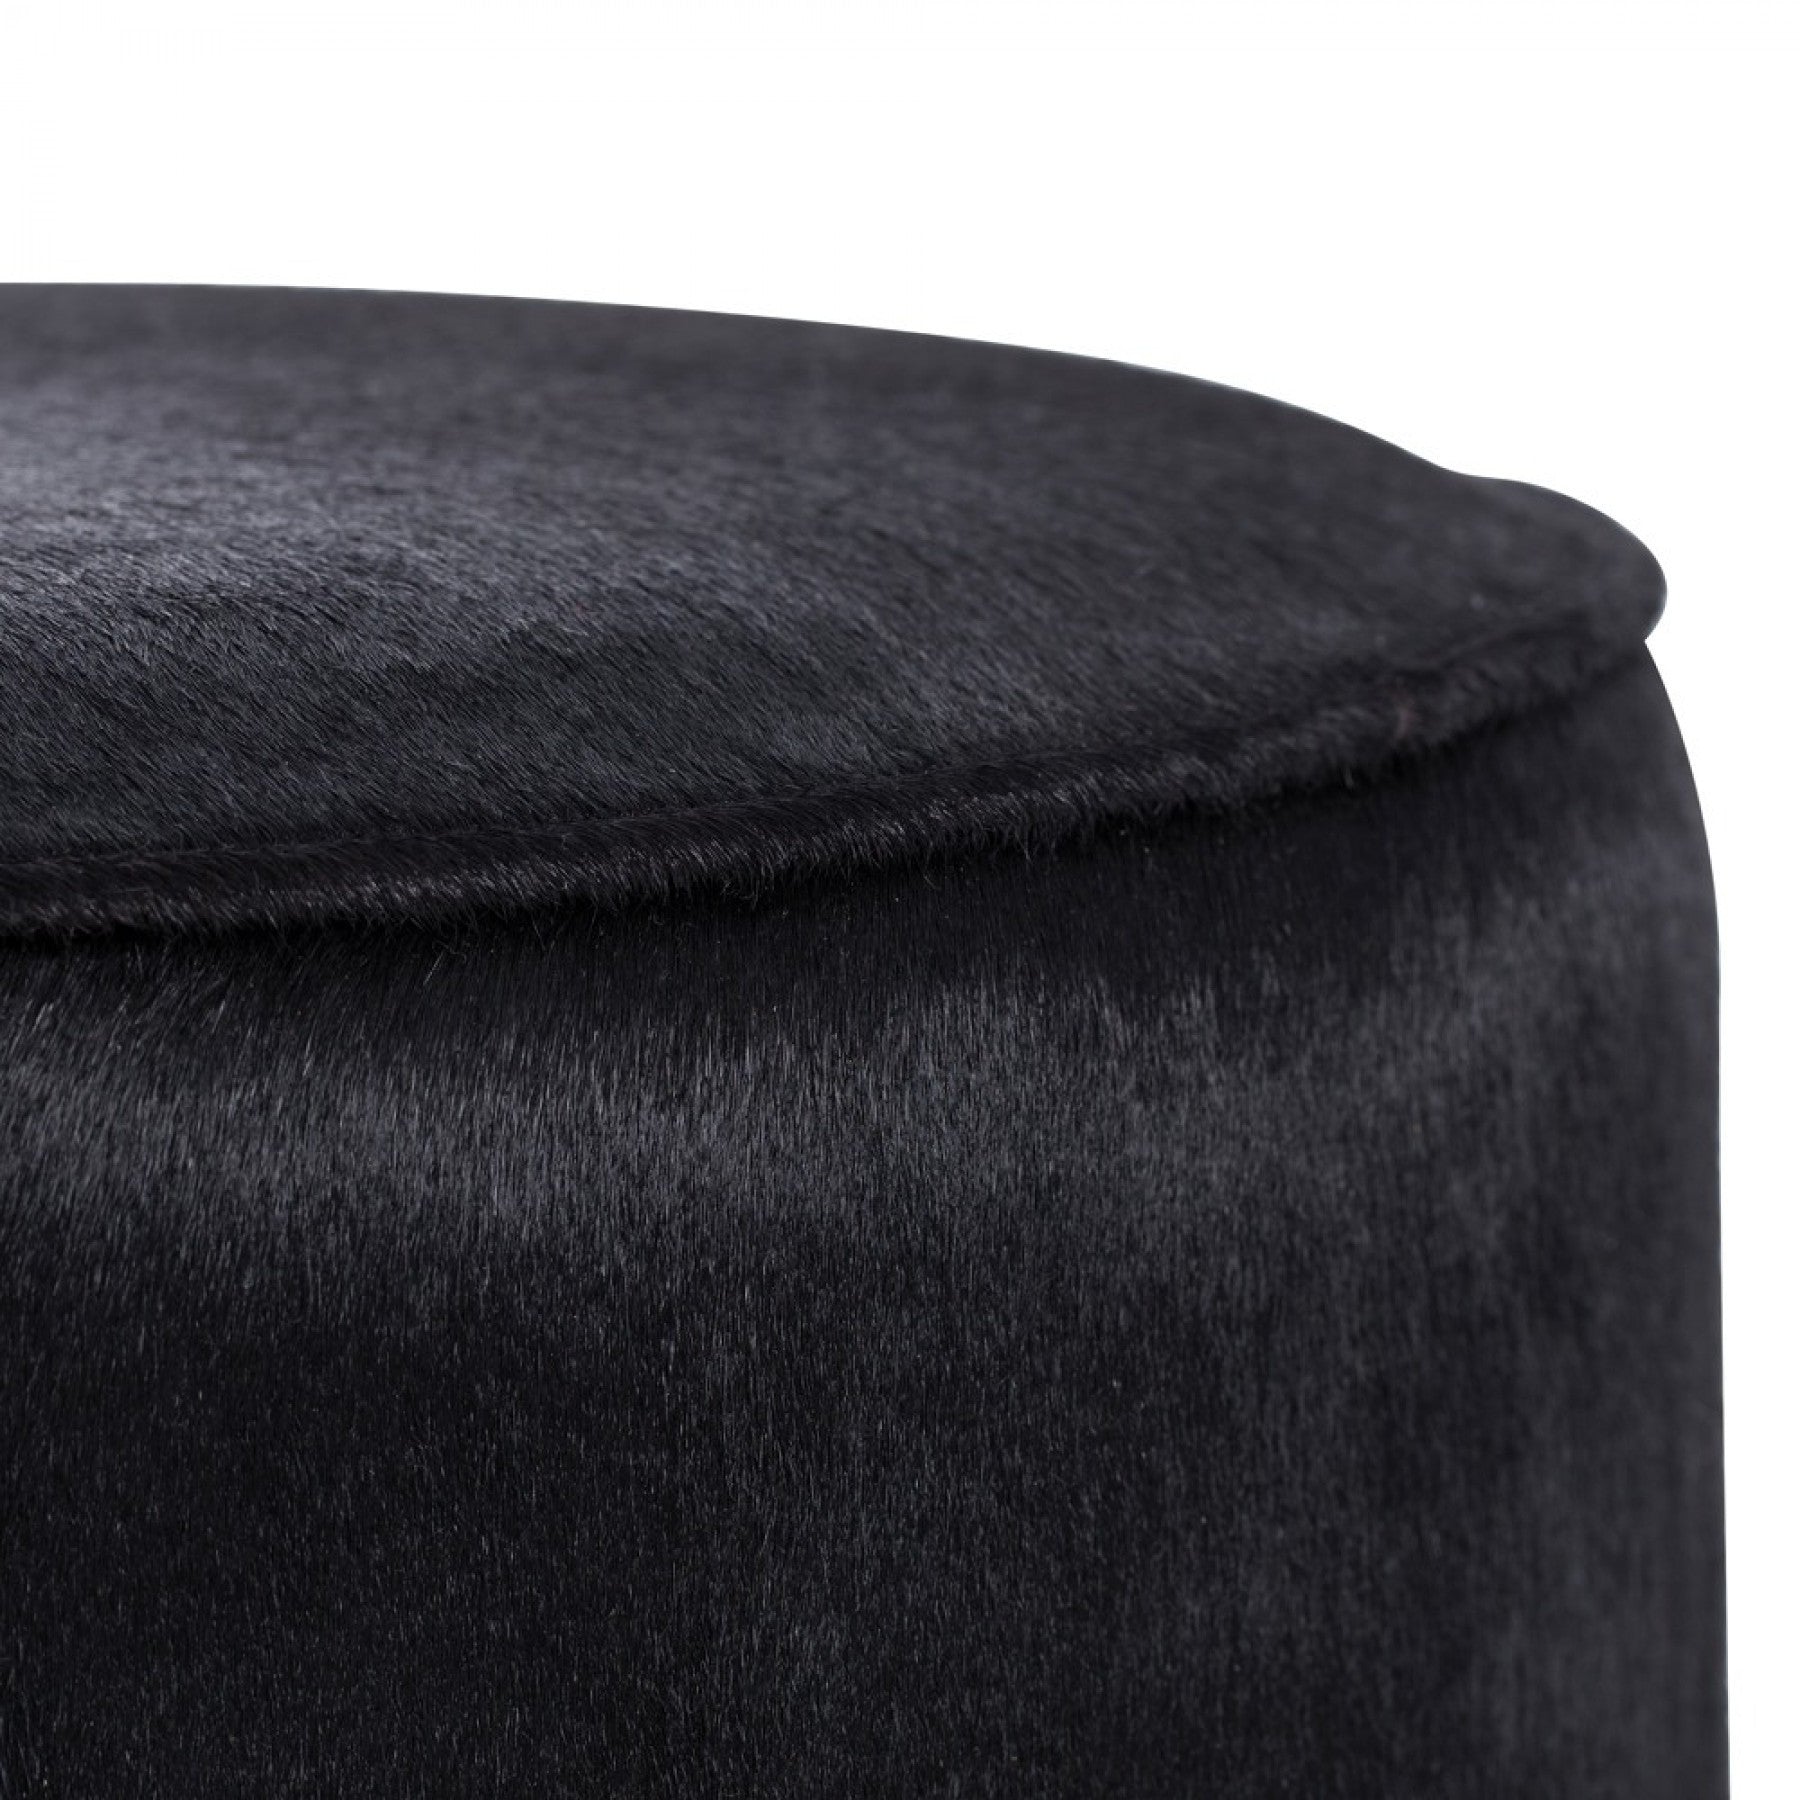 Arteriors home pratt ottoman black leather upholstery detail 6060